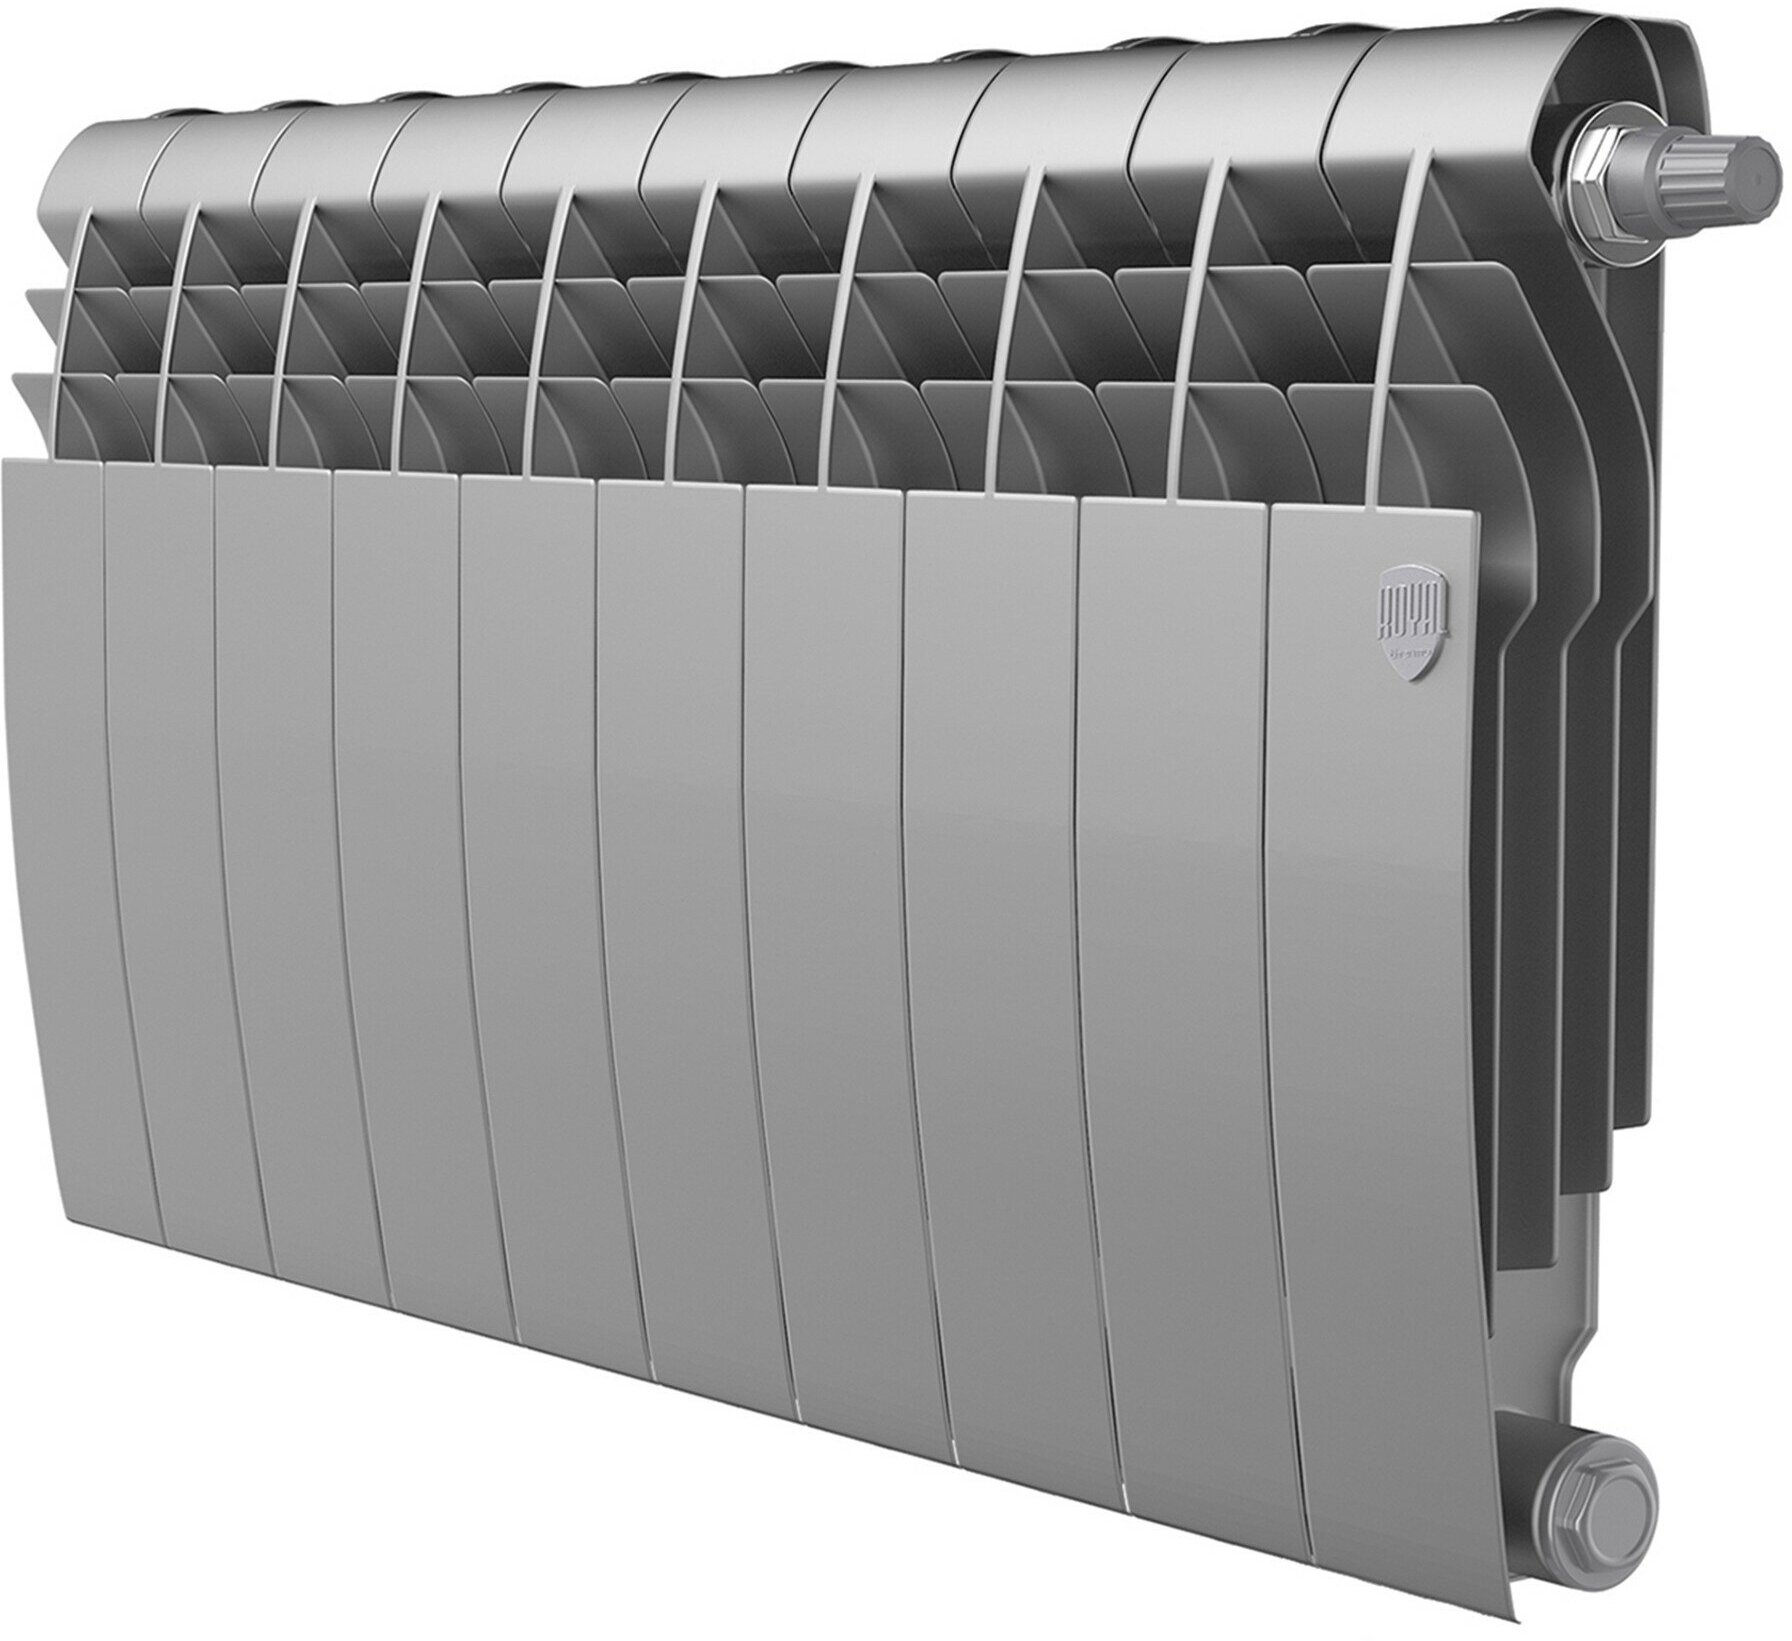 Радиатор секционный Royal Thermo Biliner 350 VDR, кол-во секций: 10, 12 м2, 1180 Вт, 800 мм.биметаллический